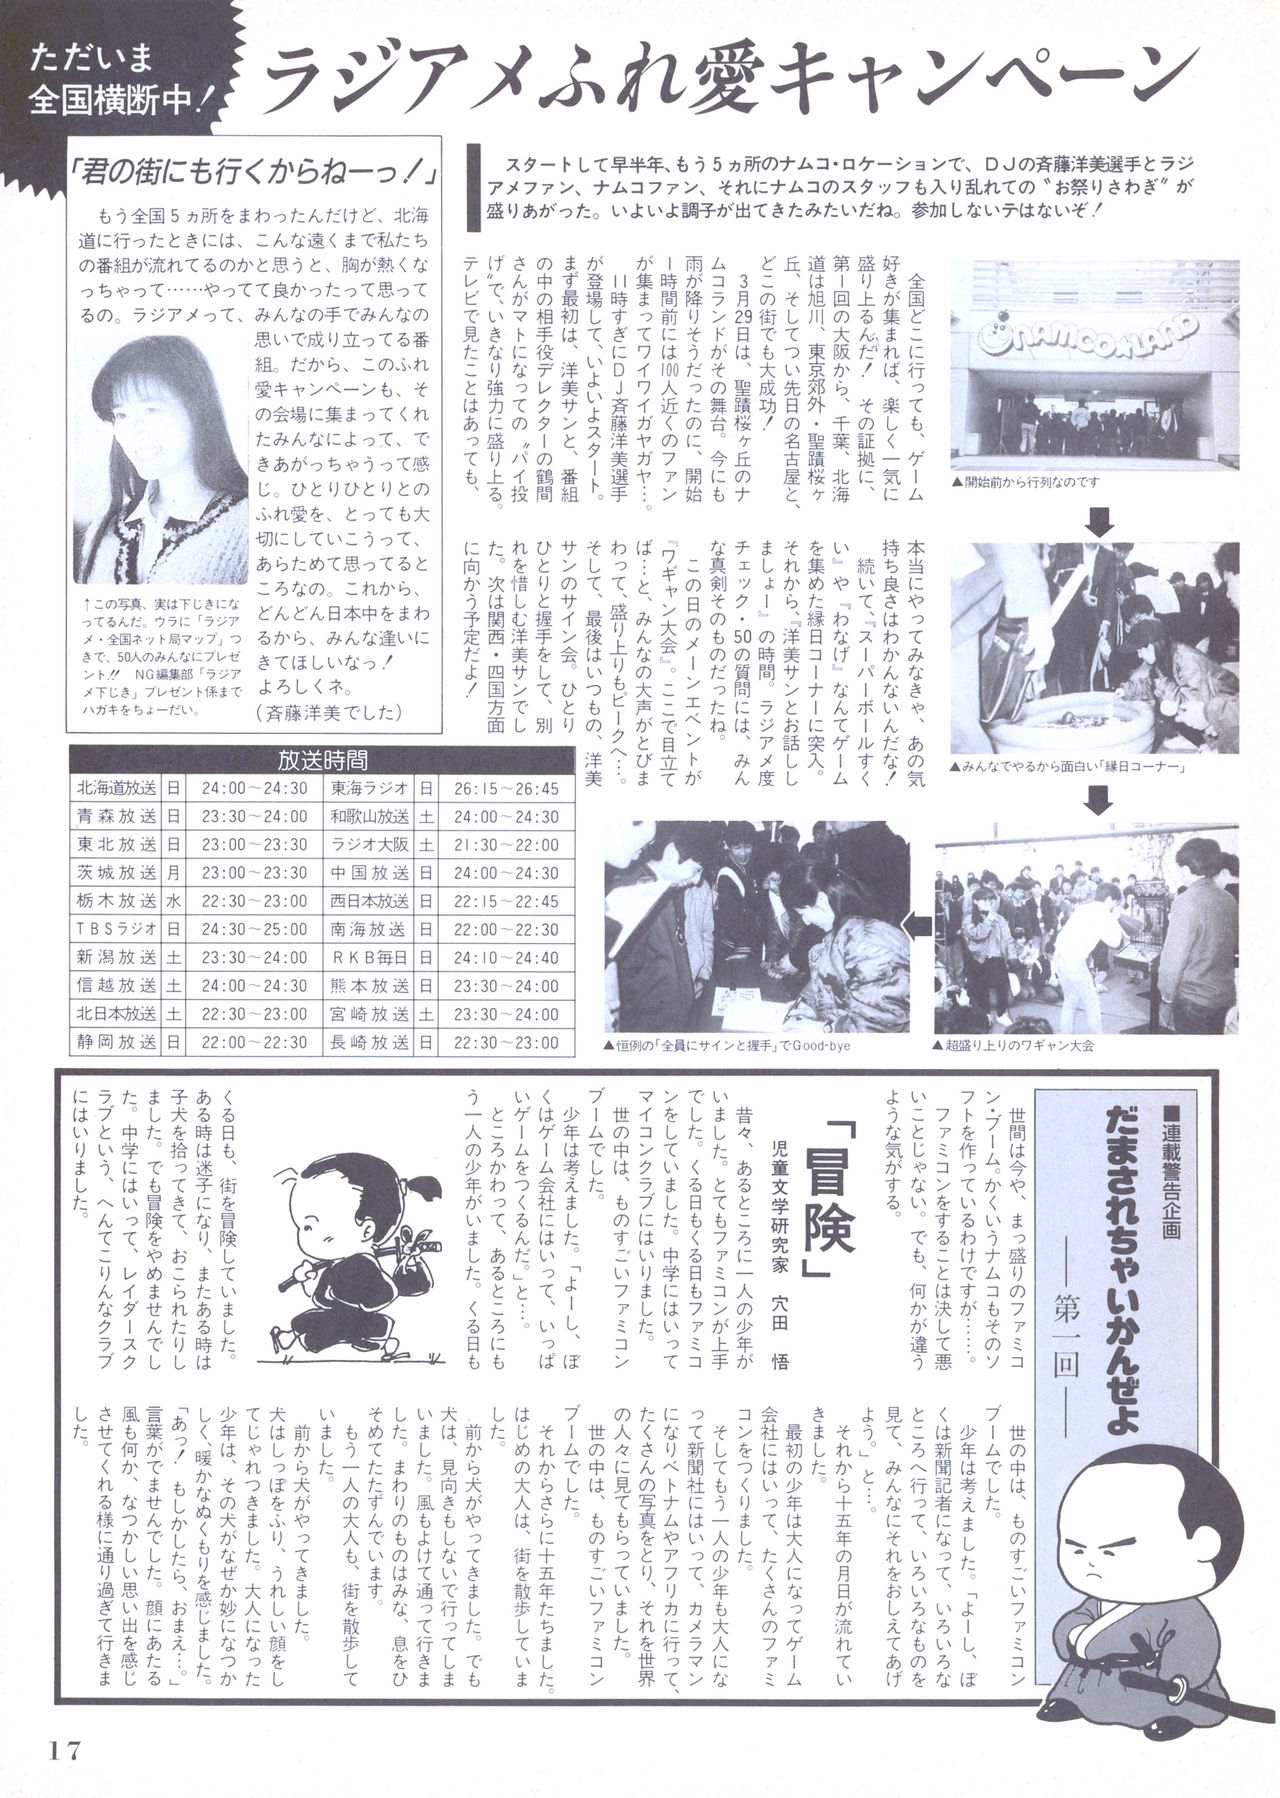 NG Namco Community Magazine 07 16